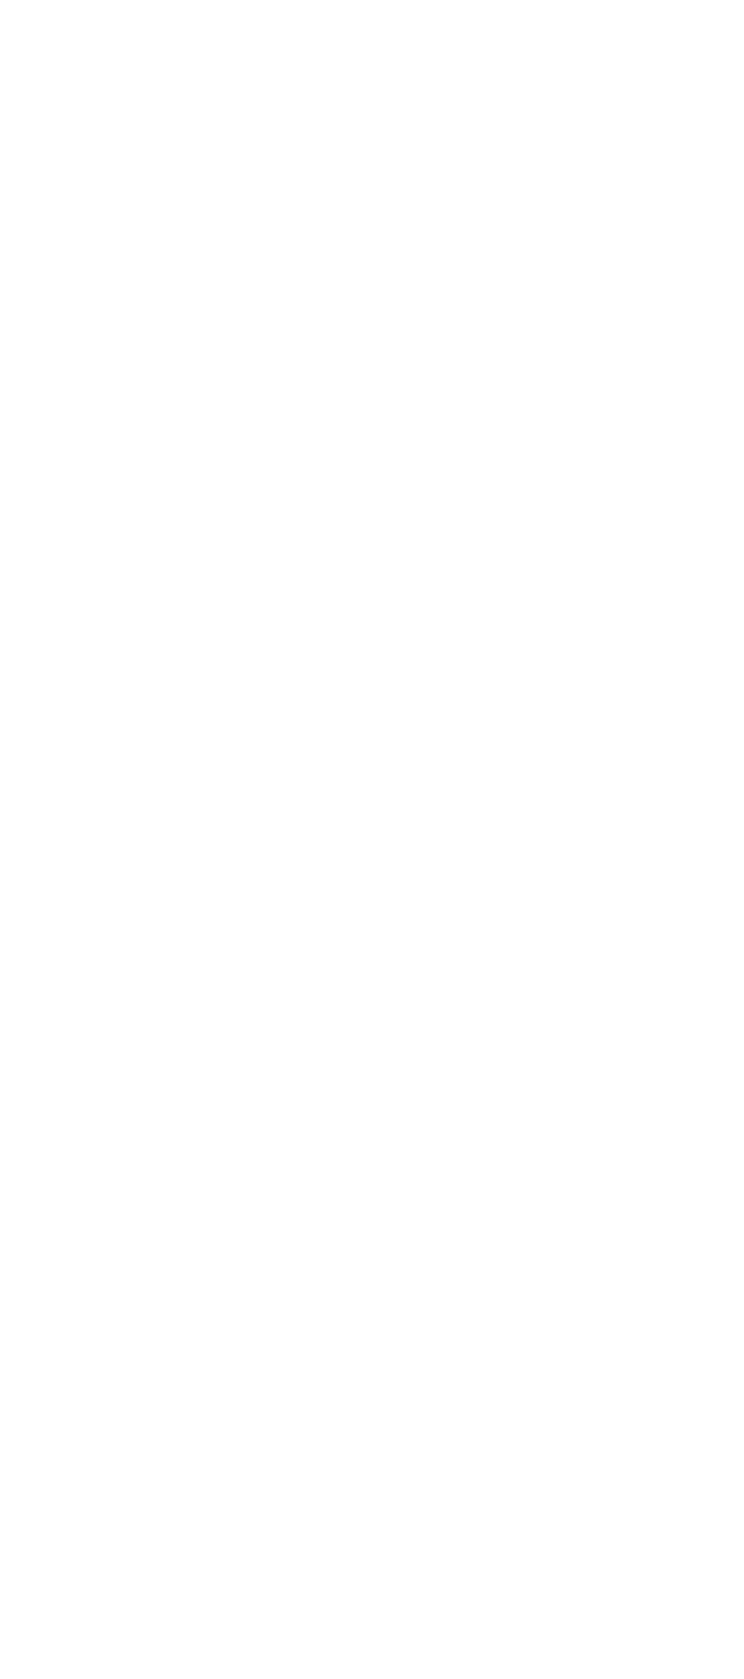 Hobby: Fragancia: Cancion: Buki:  Life Quote: Bebida: Snack: Cuminda: Un  guilty pleasure : Lugar faborito (Aruba): D   